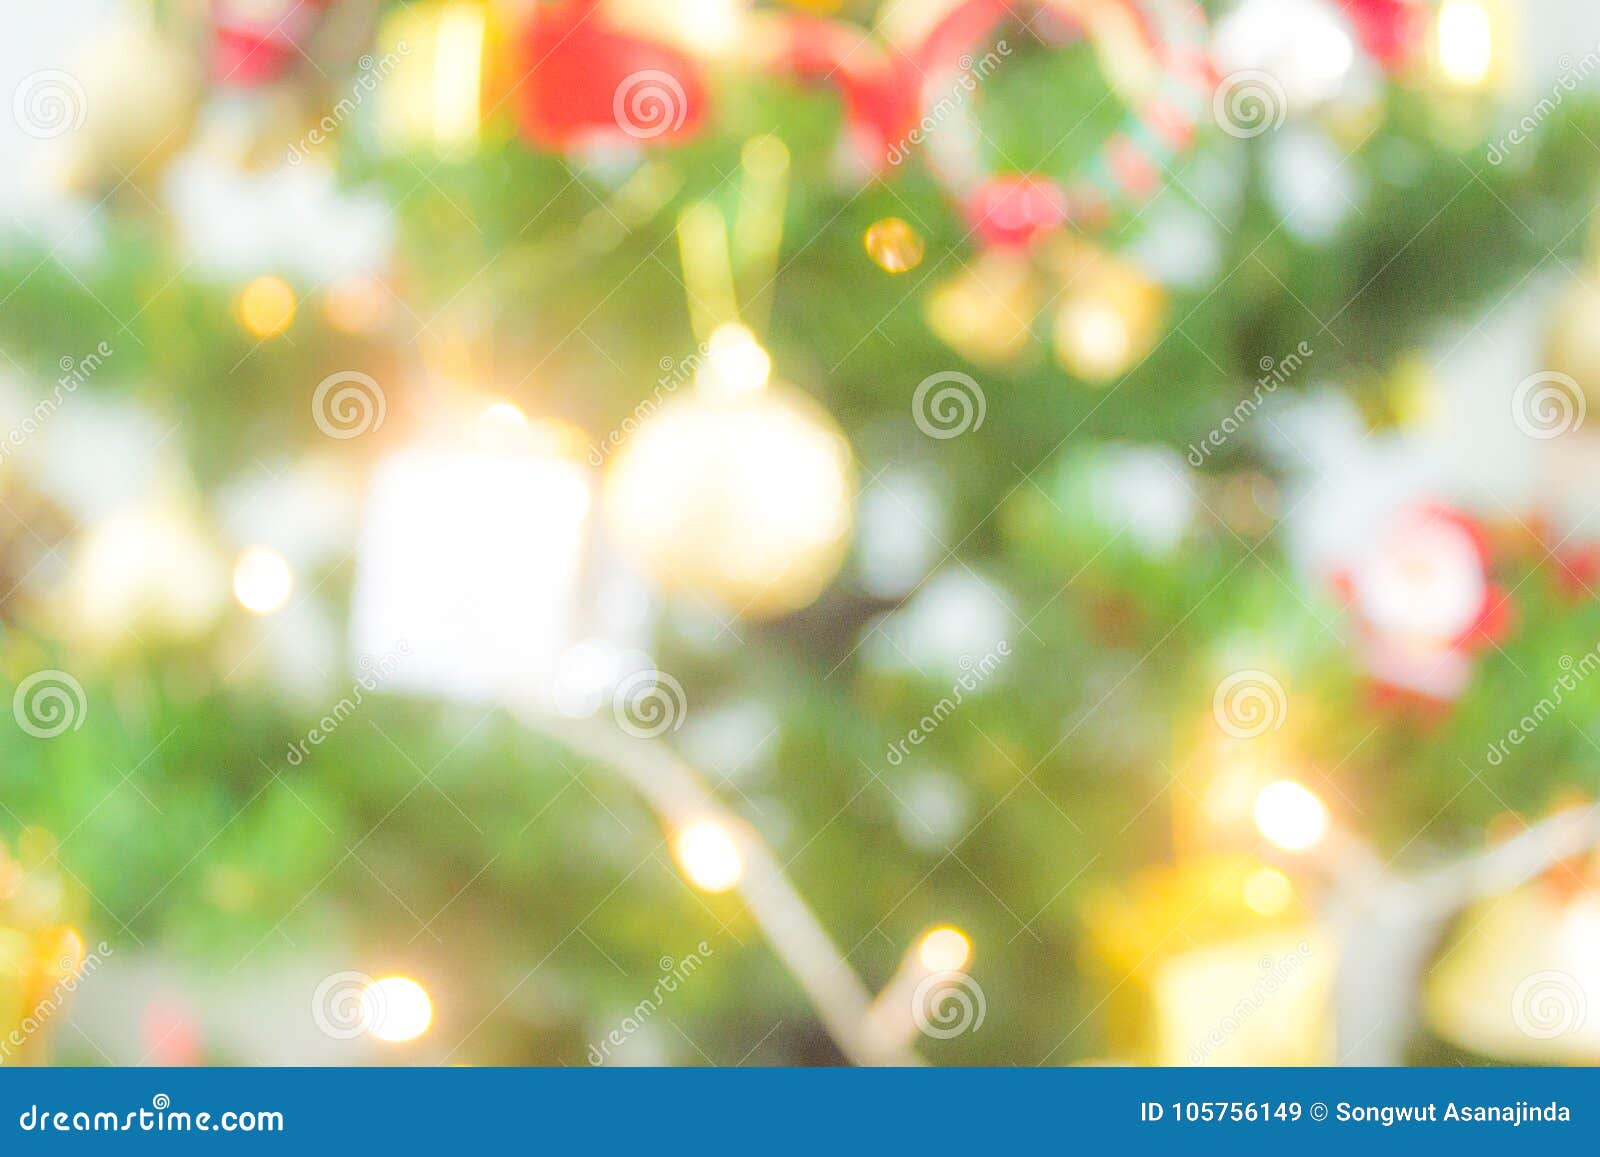 Giáng sinh đang đến rất gần, hãy cùng ngắm nhìn bức ảnh cây thông noel tuyệt đẹp này và cảm nhận sự ấm áp, ngập tràn niềm vui. Cây thông noel được trang trí đầy đủ và lung linh sẽ mang lại cho bạn một mùa giáng sinh tràn đầy cảm xúc và ý nghĩa.